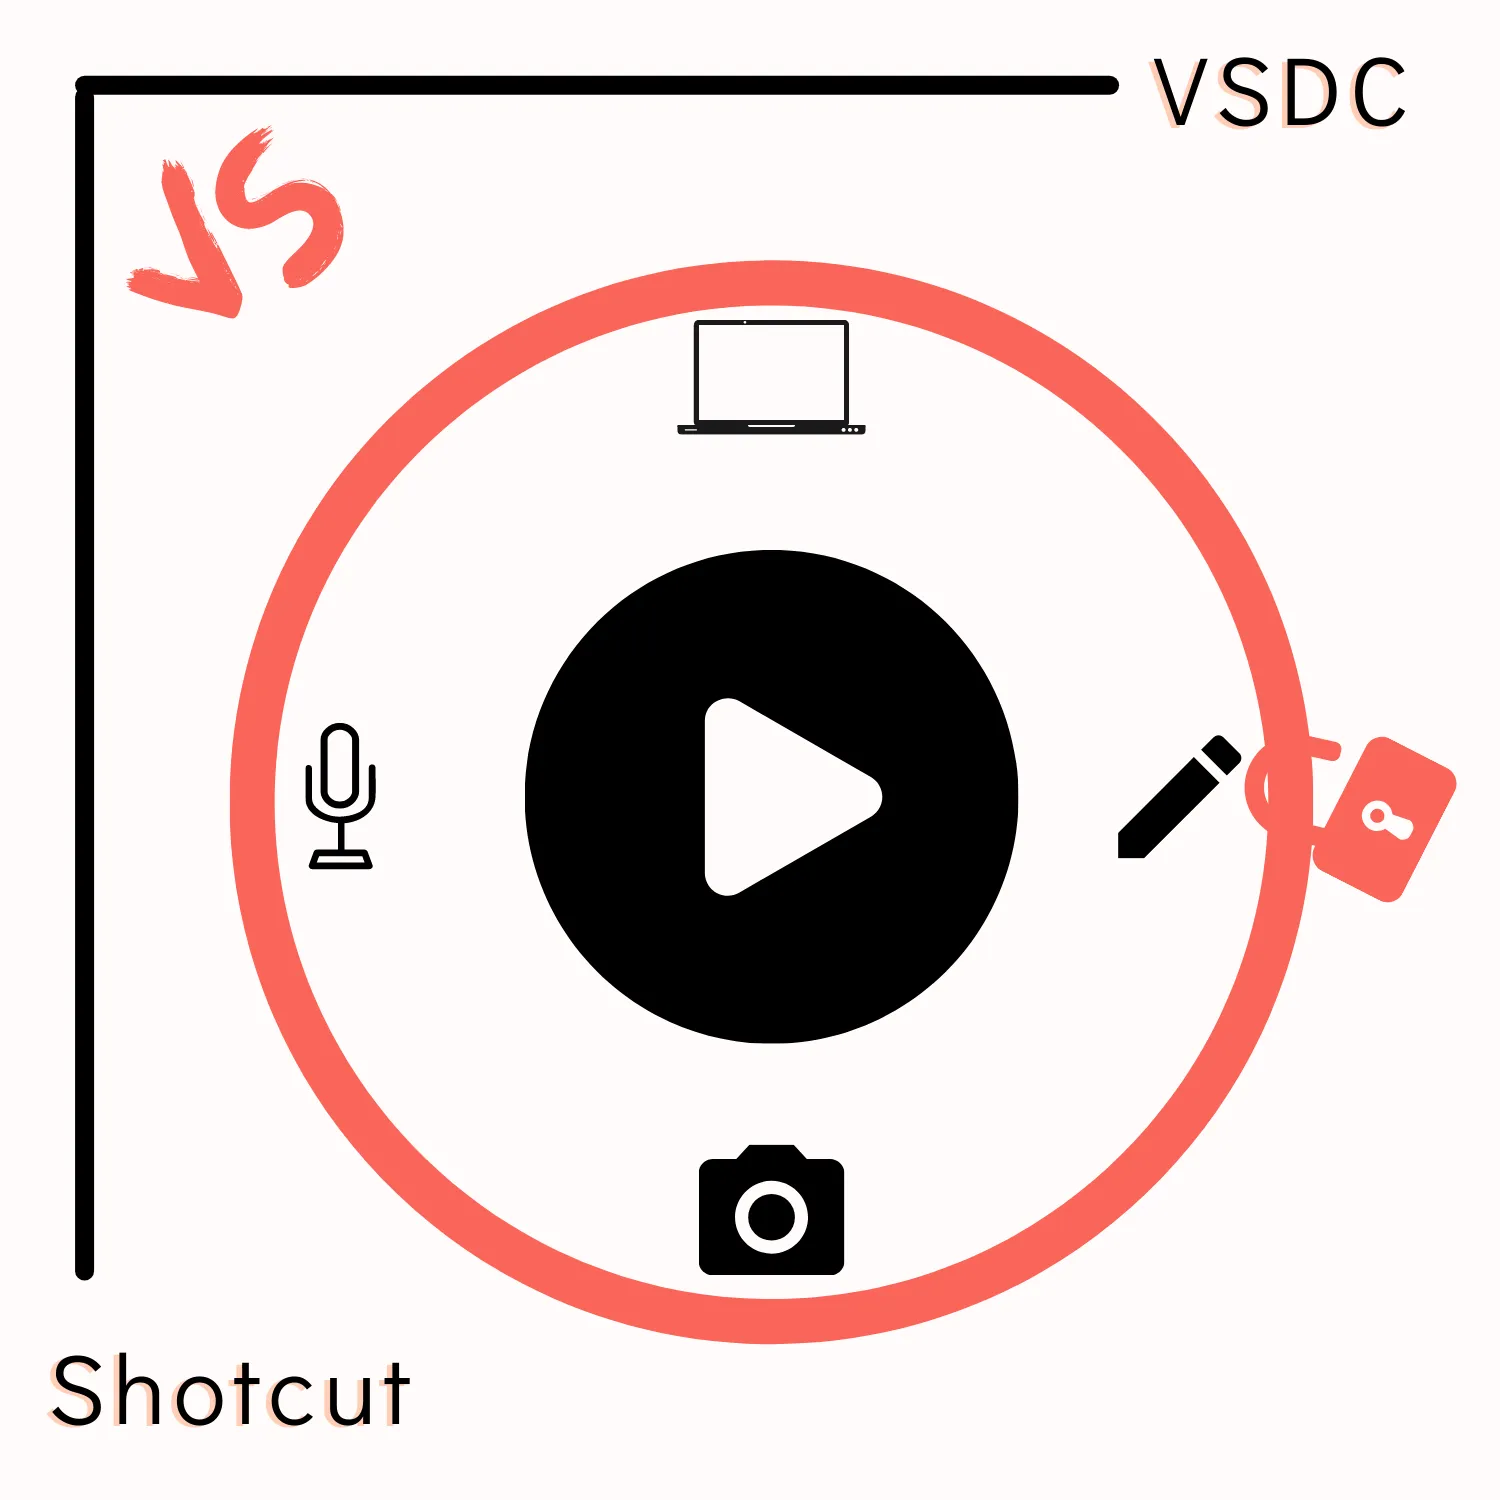 VSDC vs Shotcut